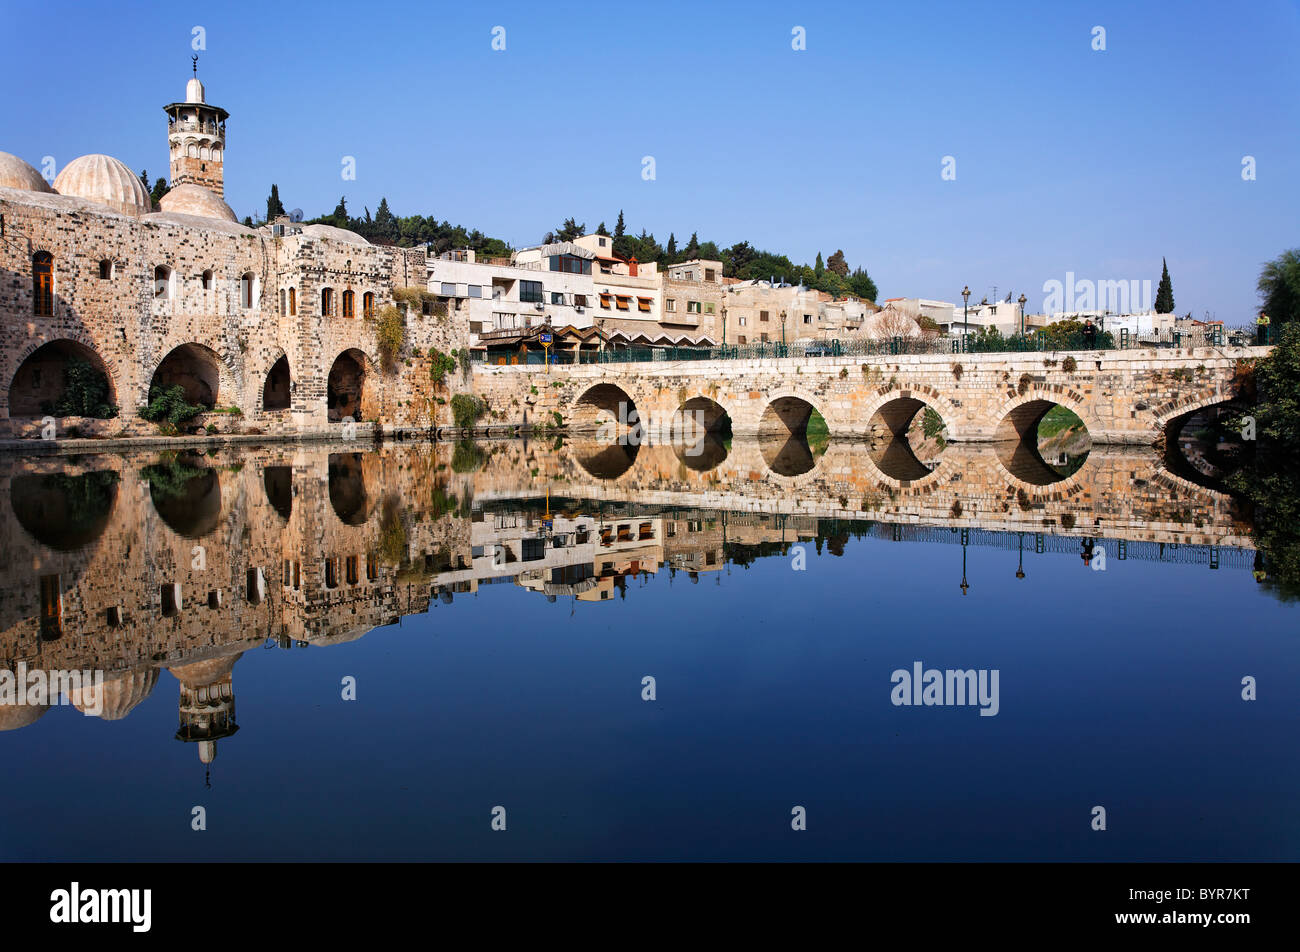 Reflet de la vieille ville de Hama, en Syrie Banque D'Images